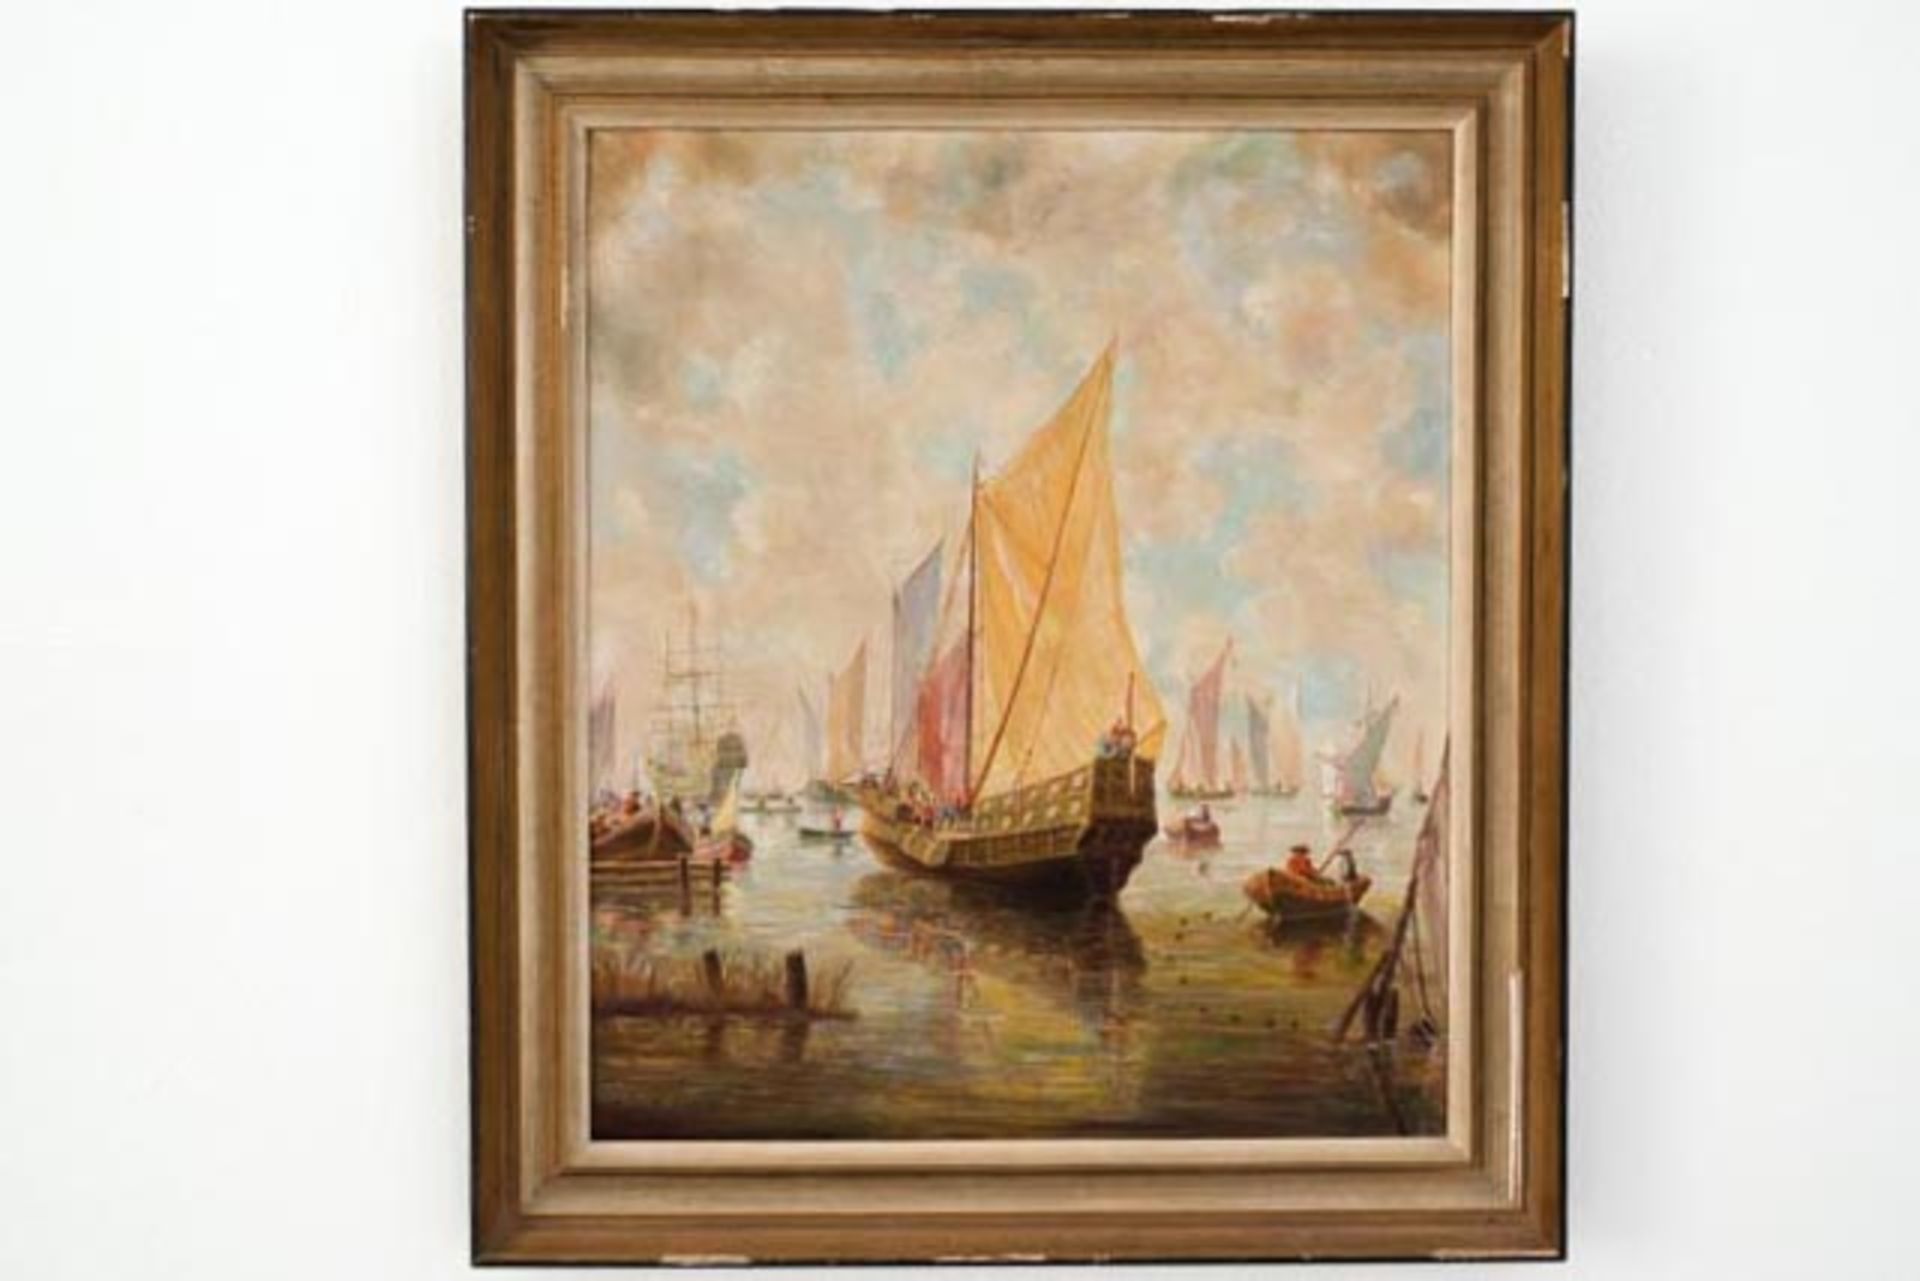 Gemälde "Schiffe auf dem Meer"